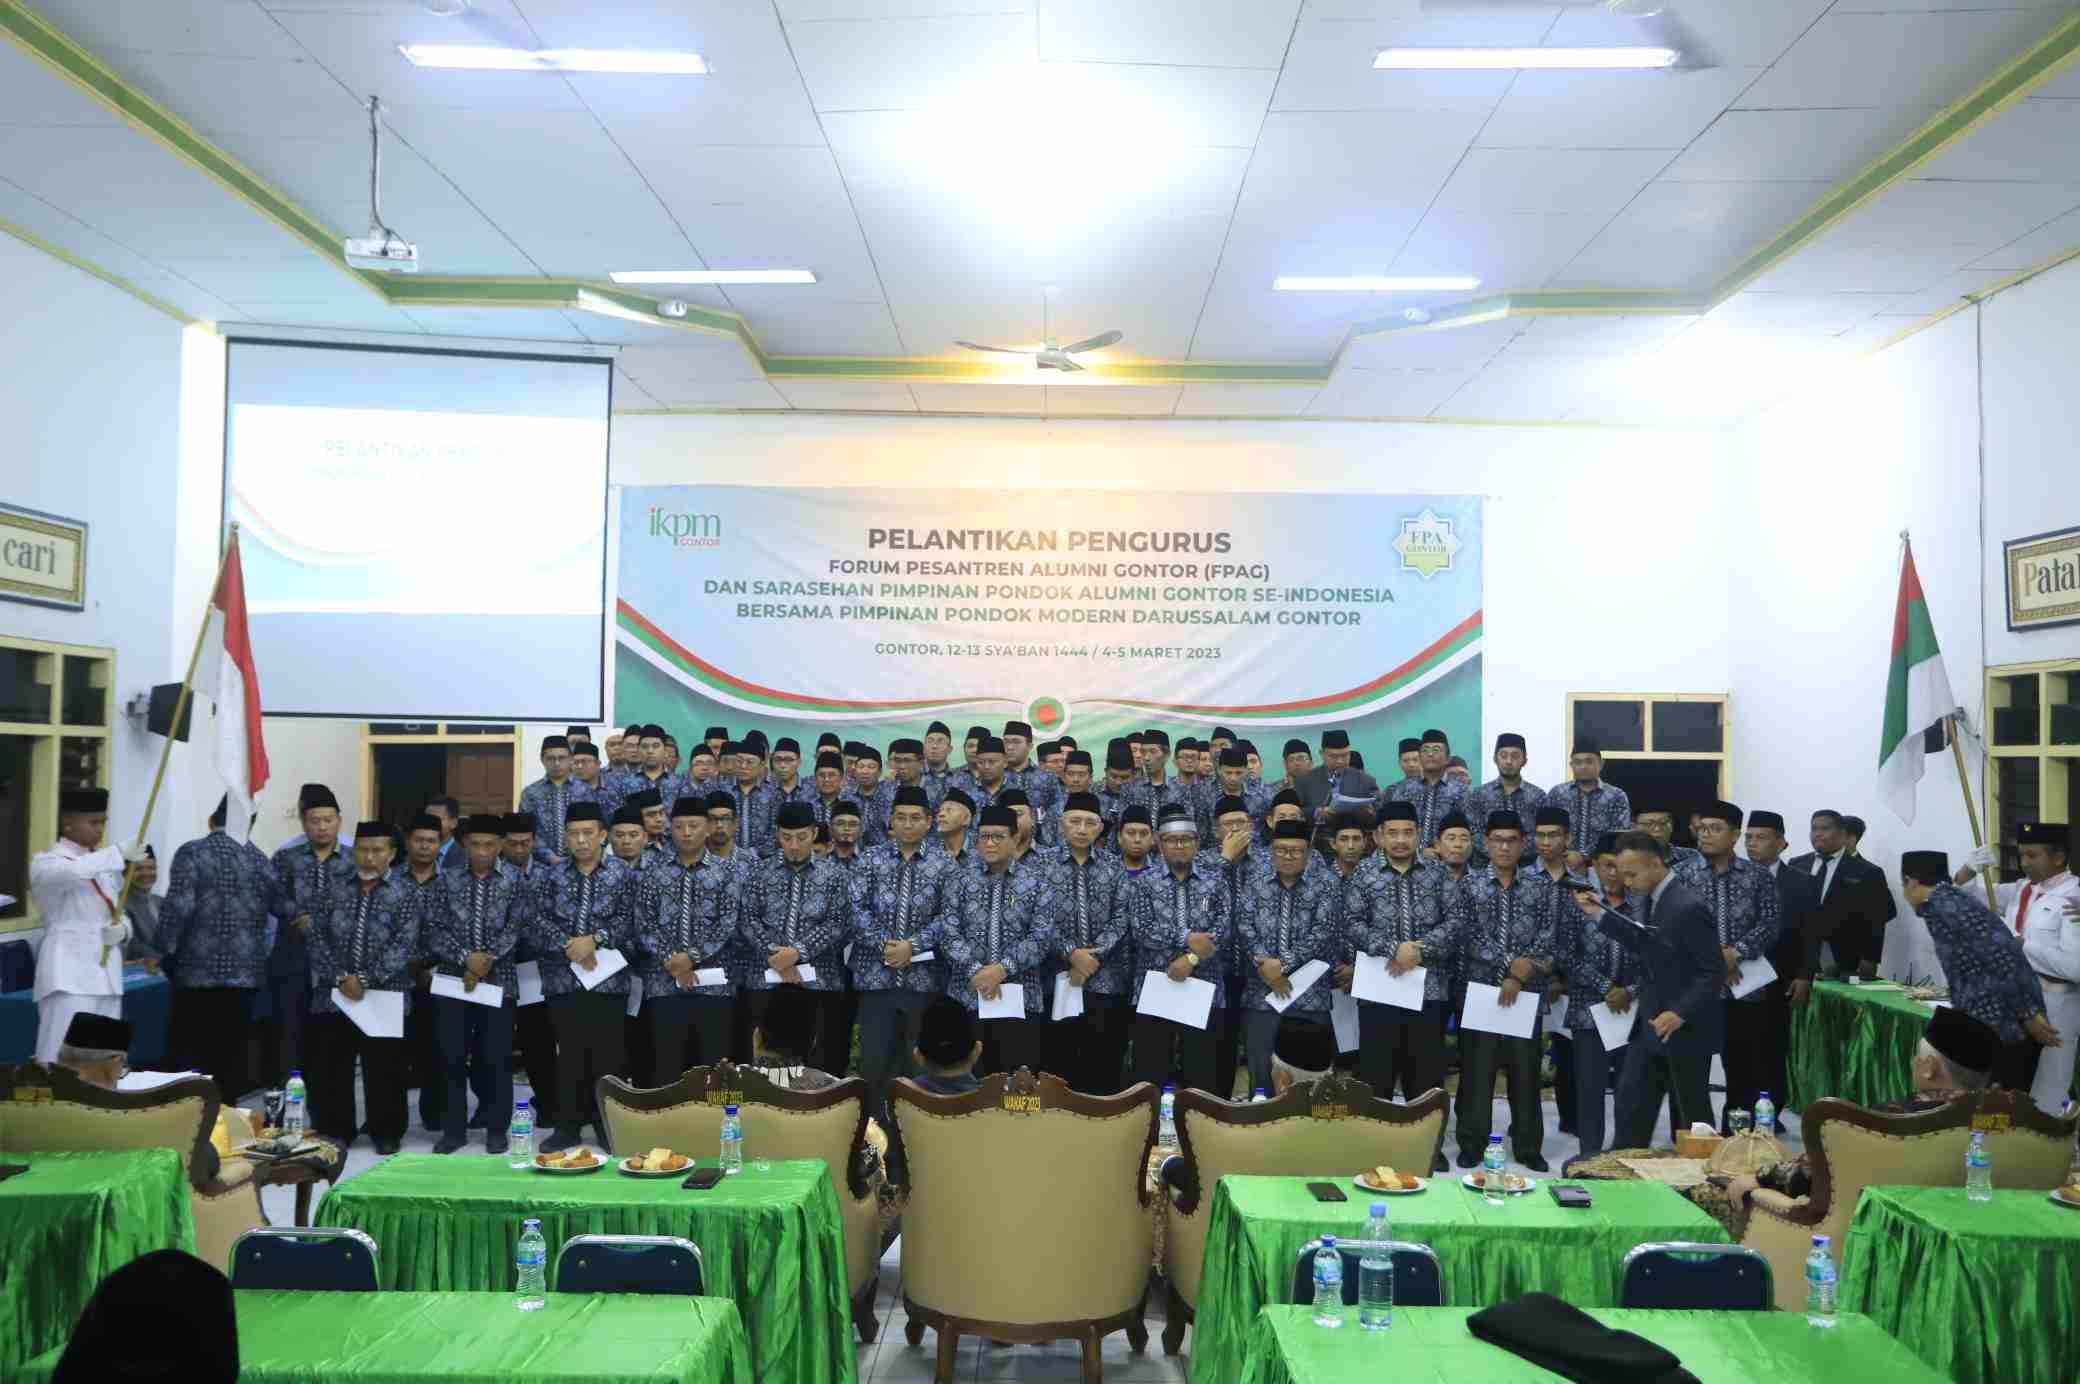 Pelantikan Pengurus FPAG (Forum Pesantren Alumni Gontor) Masa Bakti 2020-2025 dan Sarasehan antar Pengasuh Pondok Pesantren Alumni Gontor Se-Indonesia di Pondok Modern Darussalam Gontor.